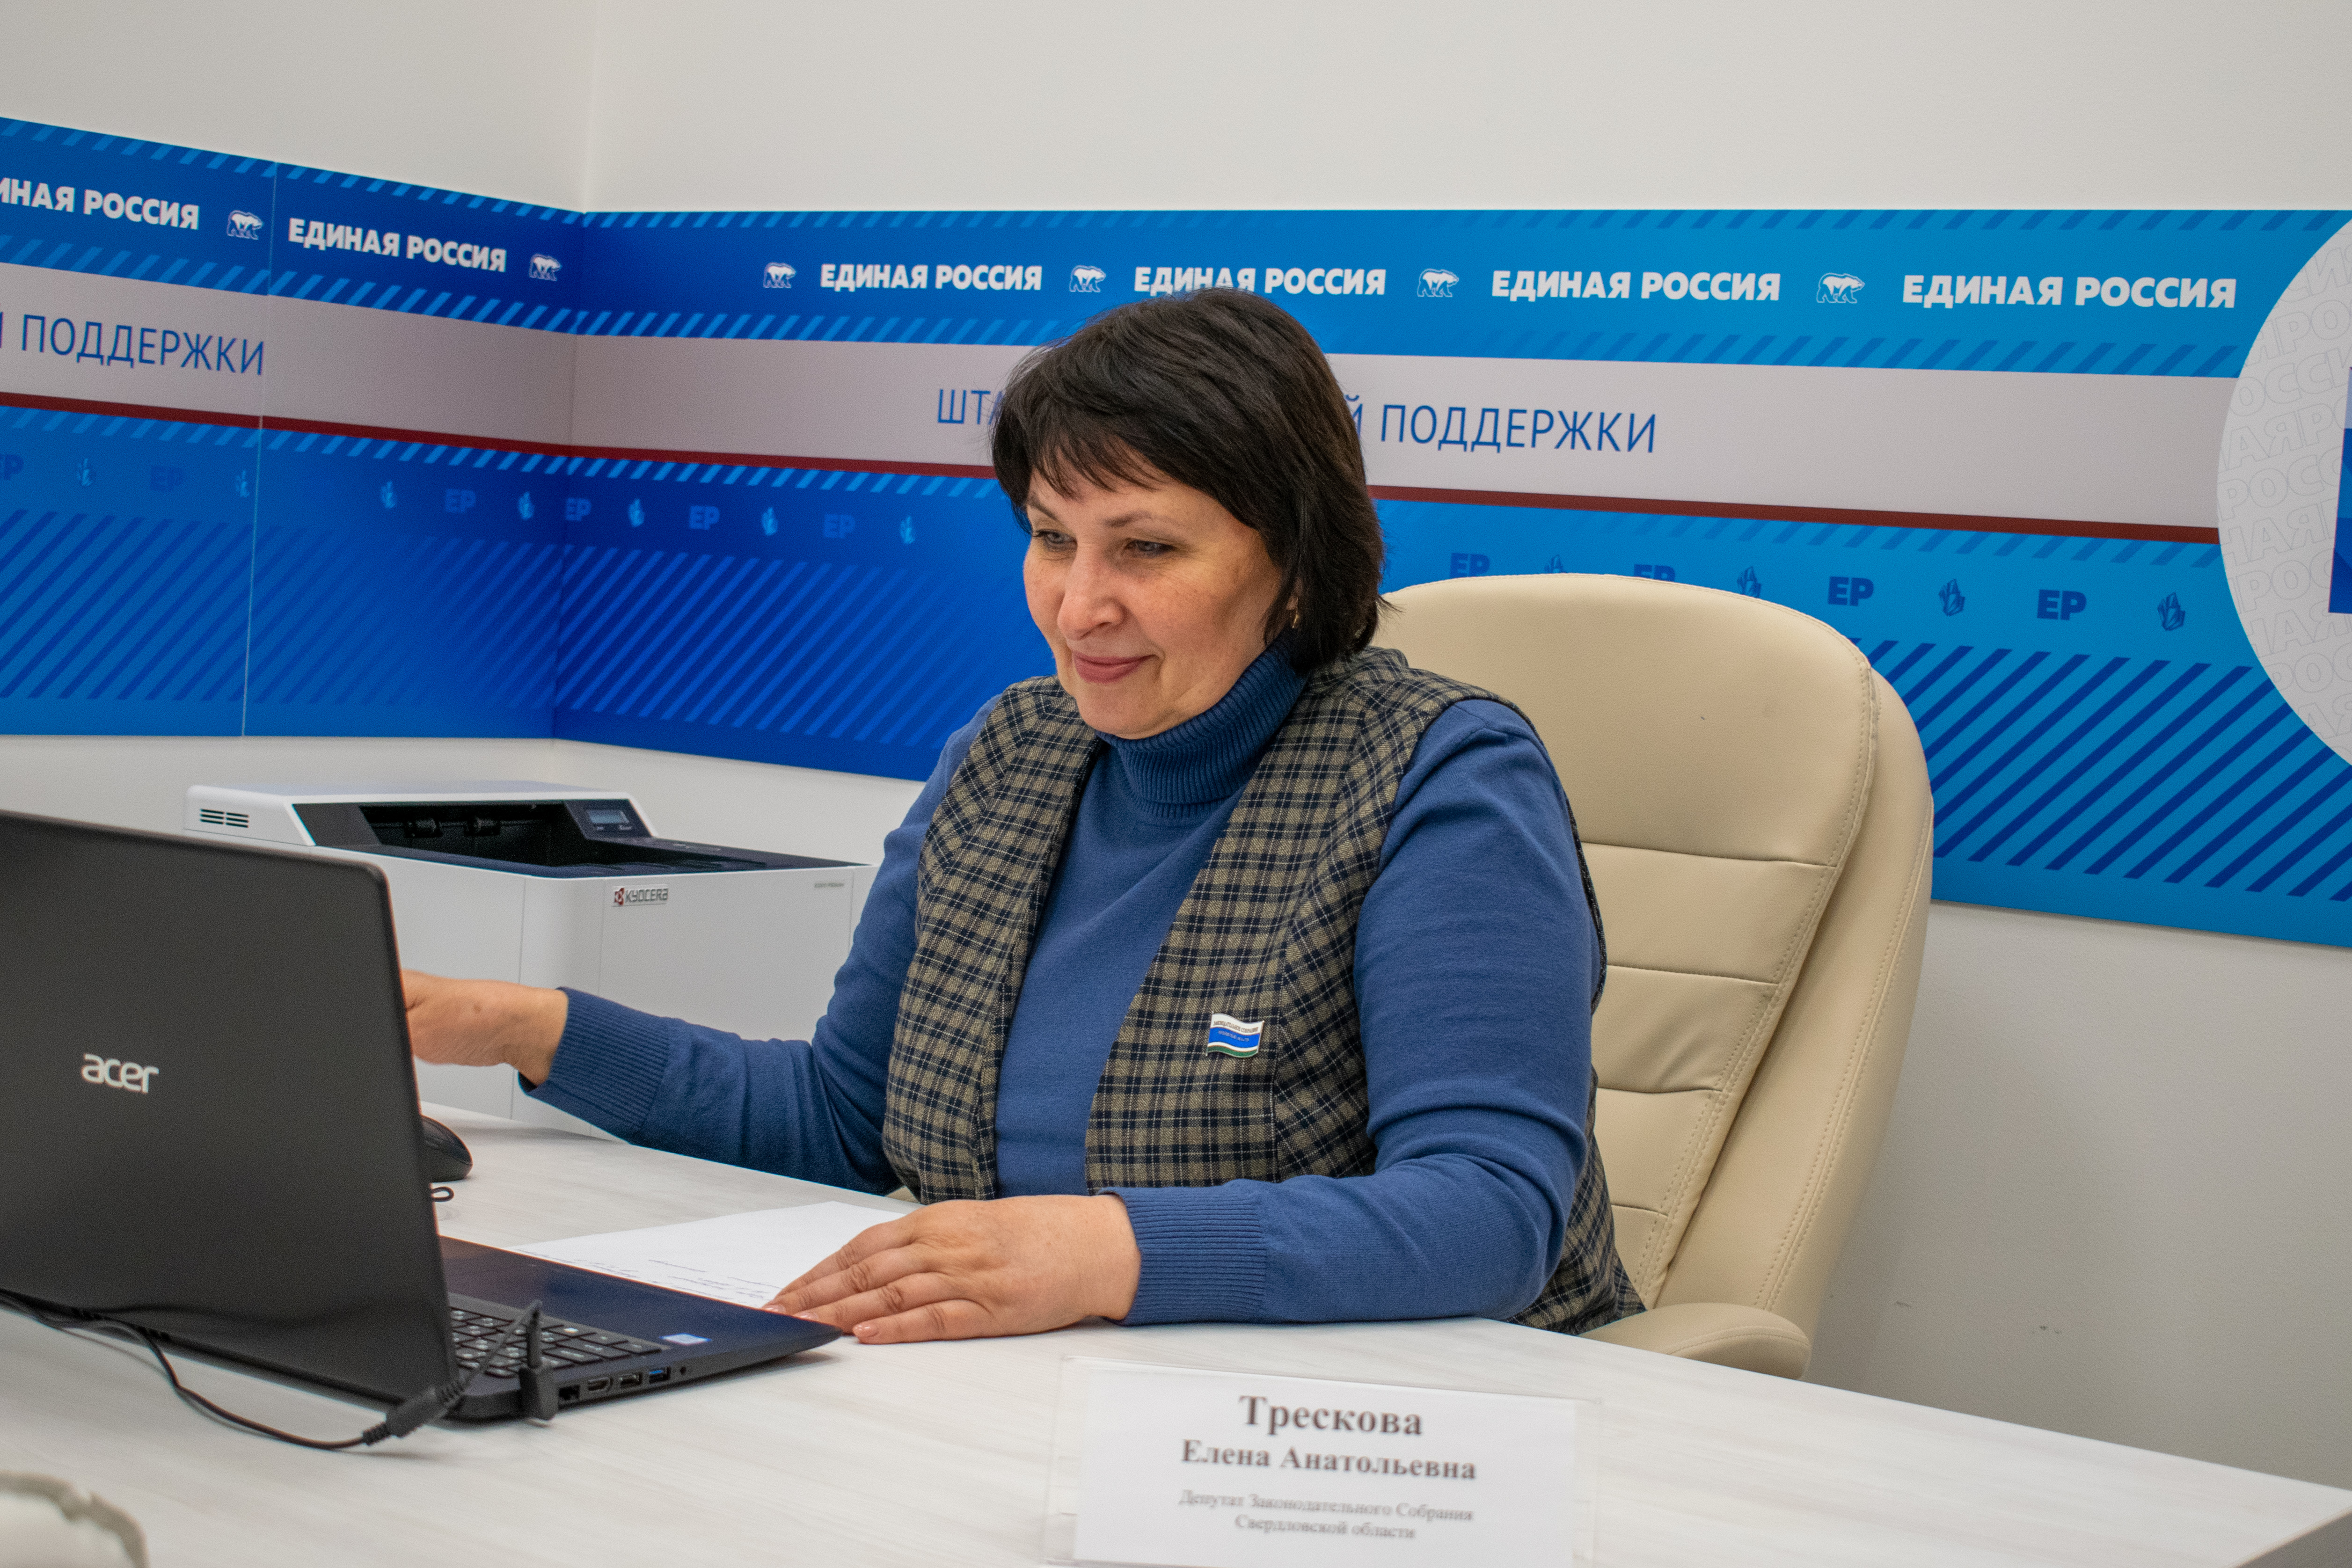 Елена Трескова обсудила актуальные вопросы с жителями региона